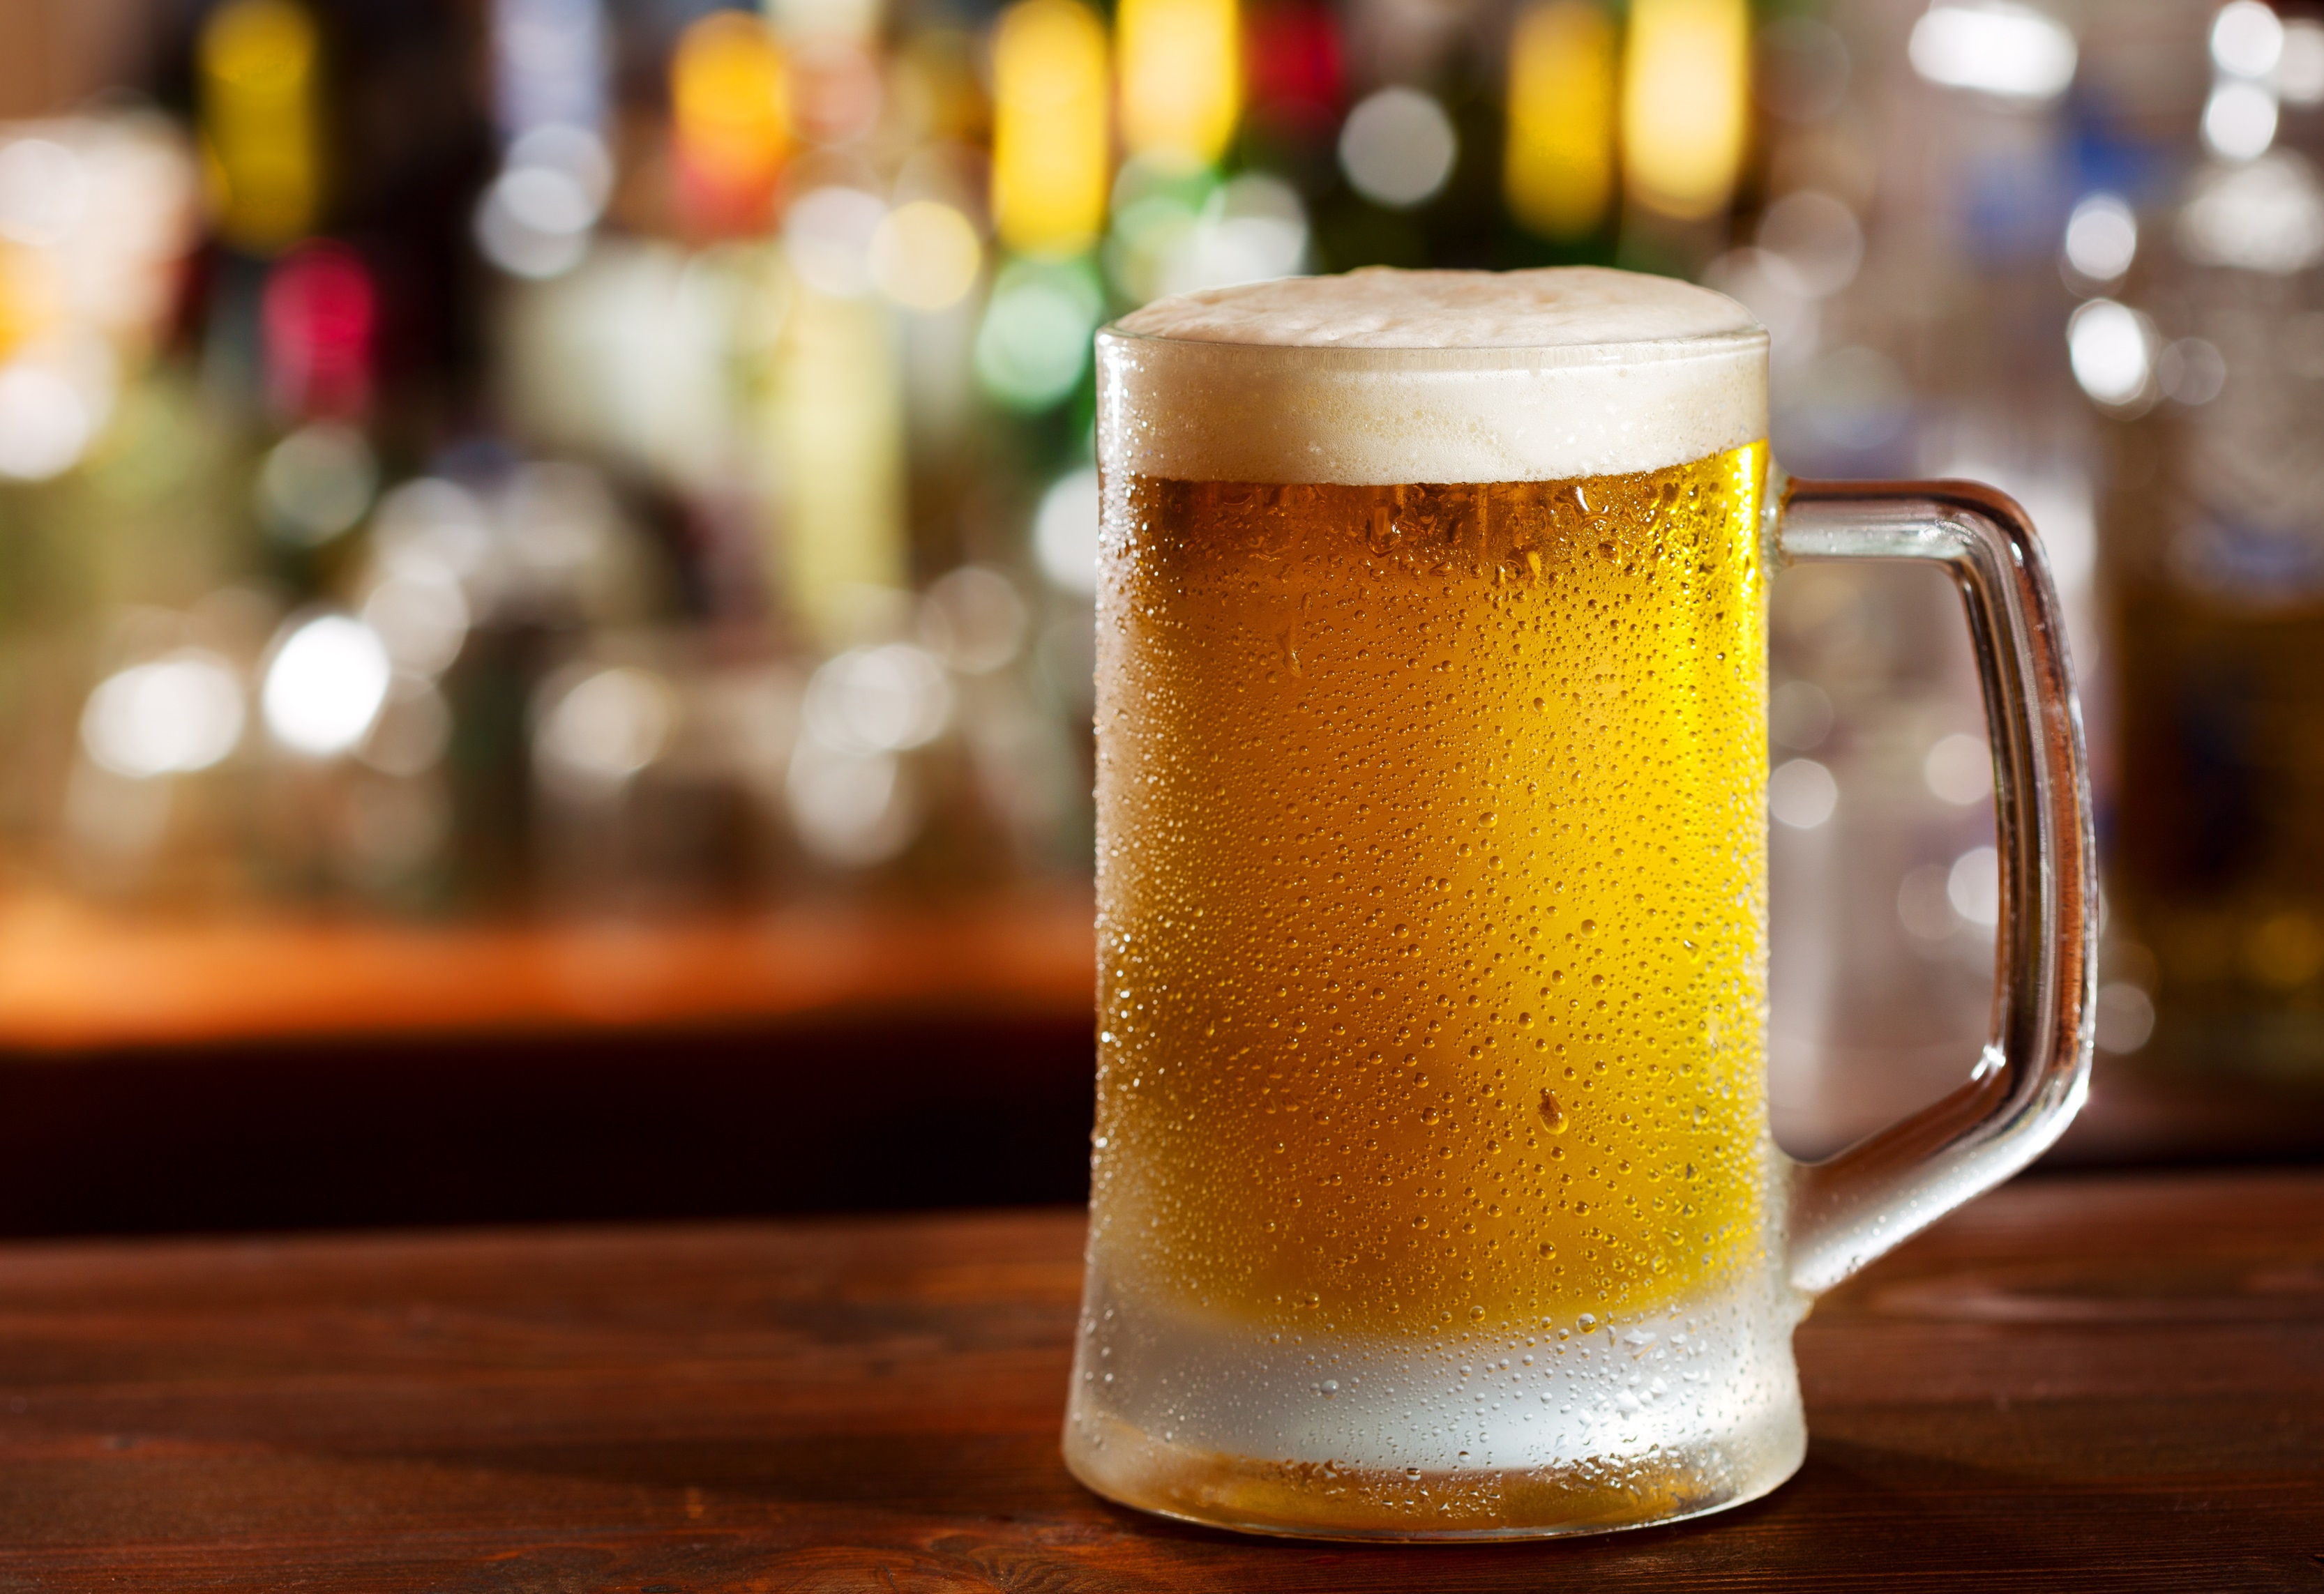 큰 실수로 판명된 알코올 음료에 대한 7가지 신화